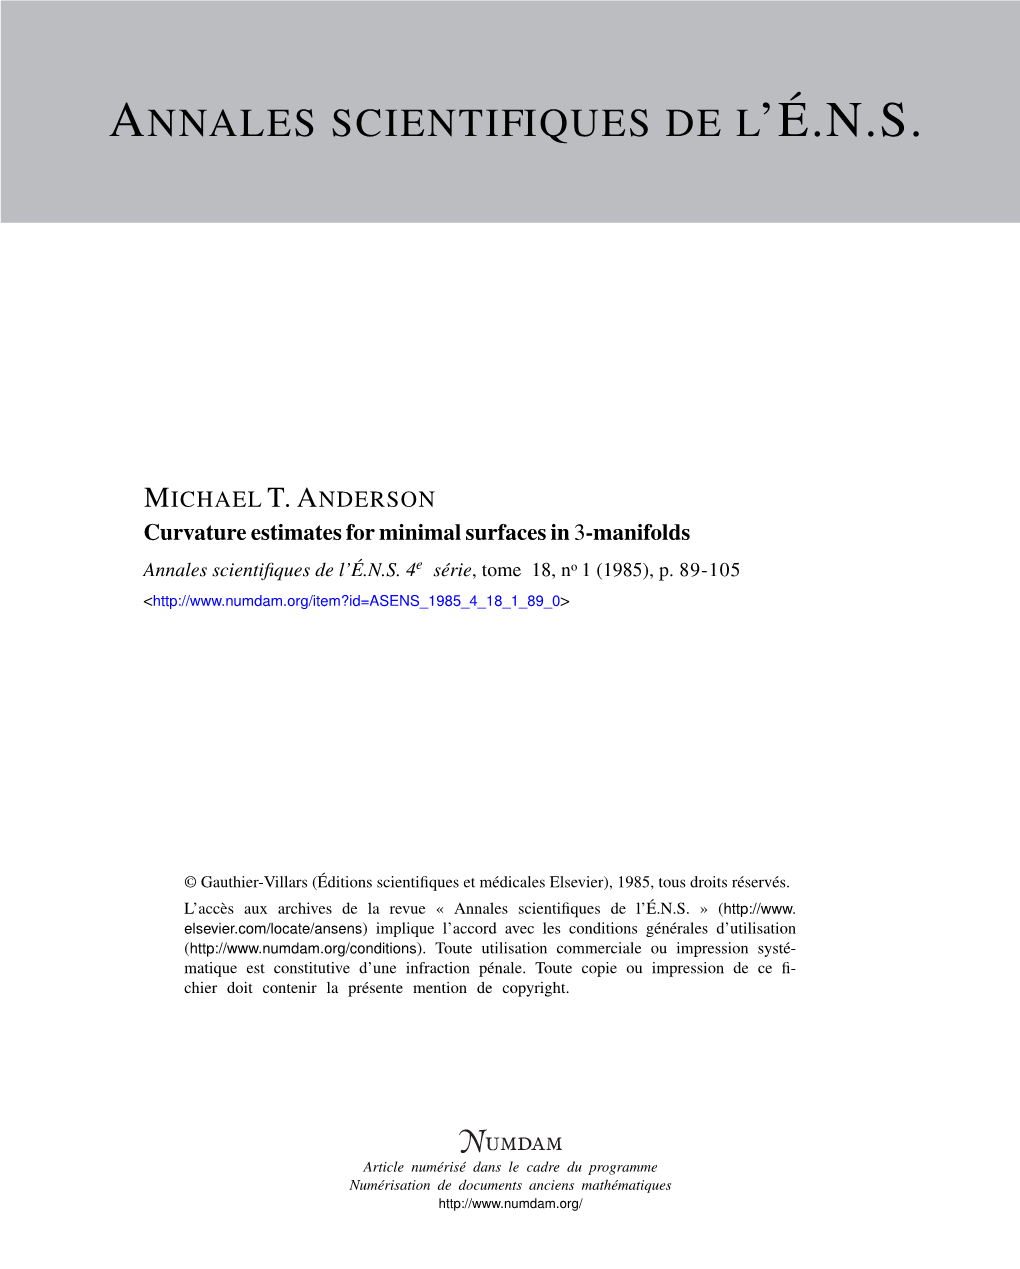 Curvature Estimates for Minimal Surfaces in 3-Manifolds Annales Scientiﬁques De L’É.N.S